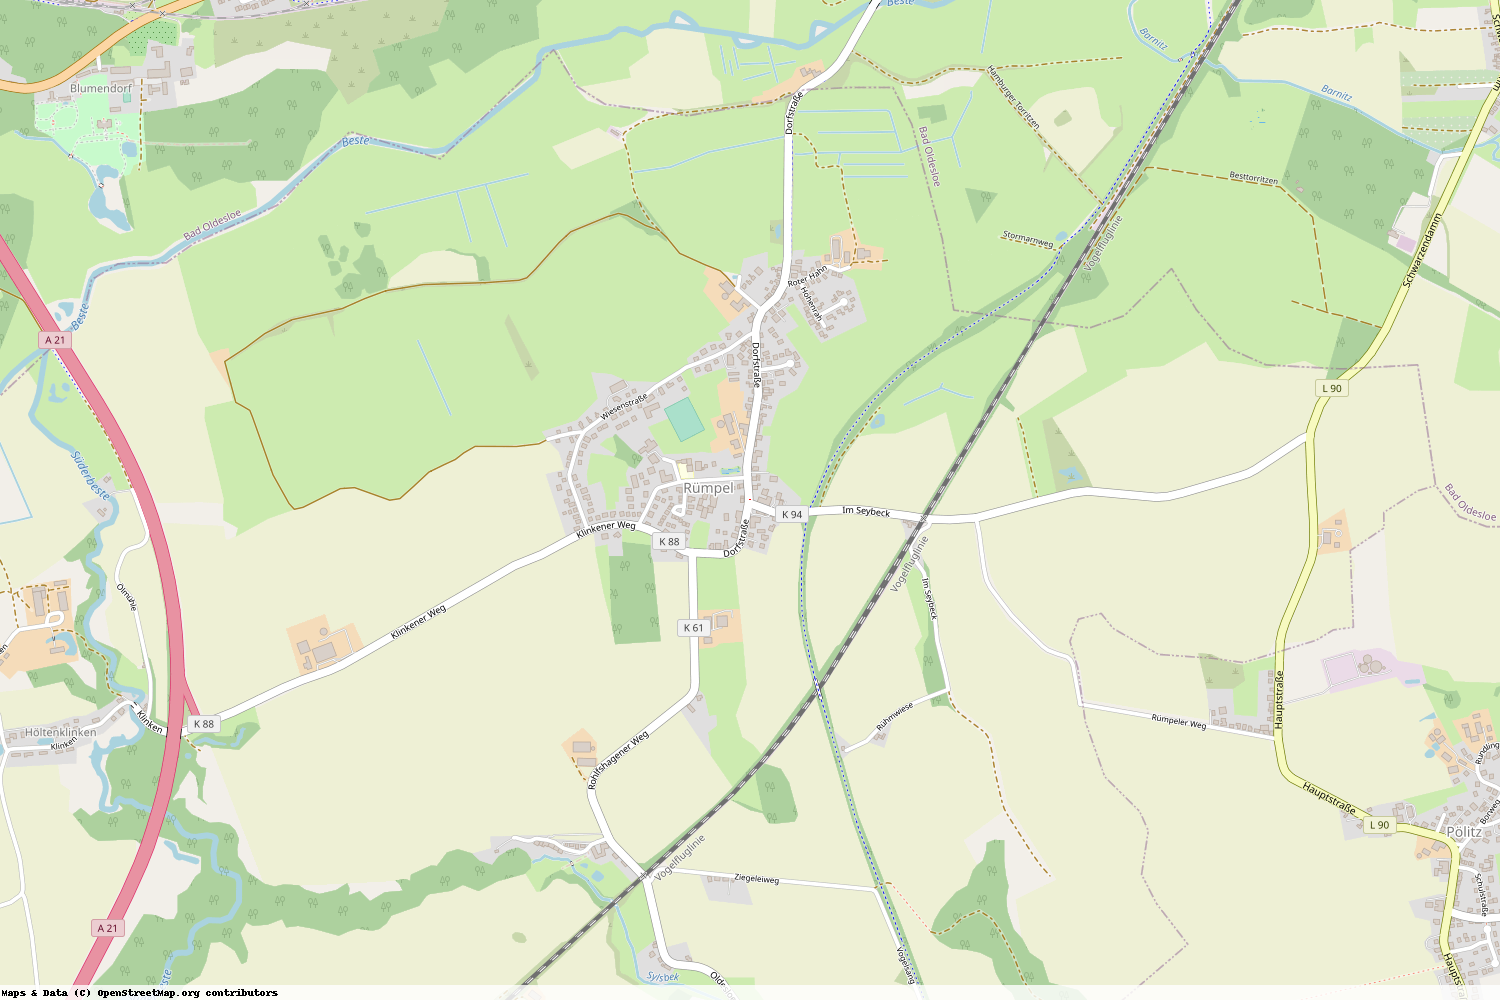 Ist gerade Stromausfall in Schleswig-Holstein - Stormarn - Rümpel?